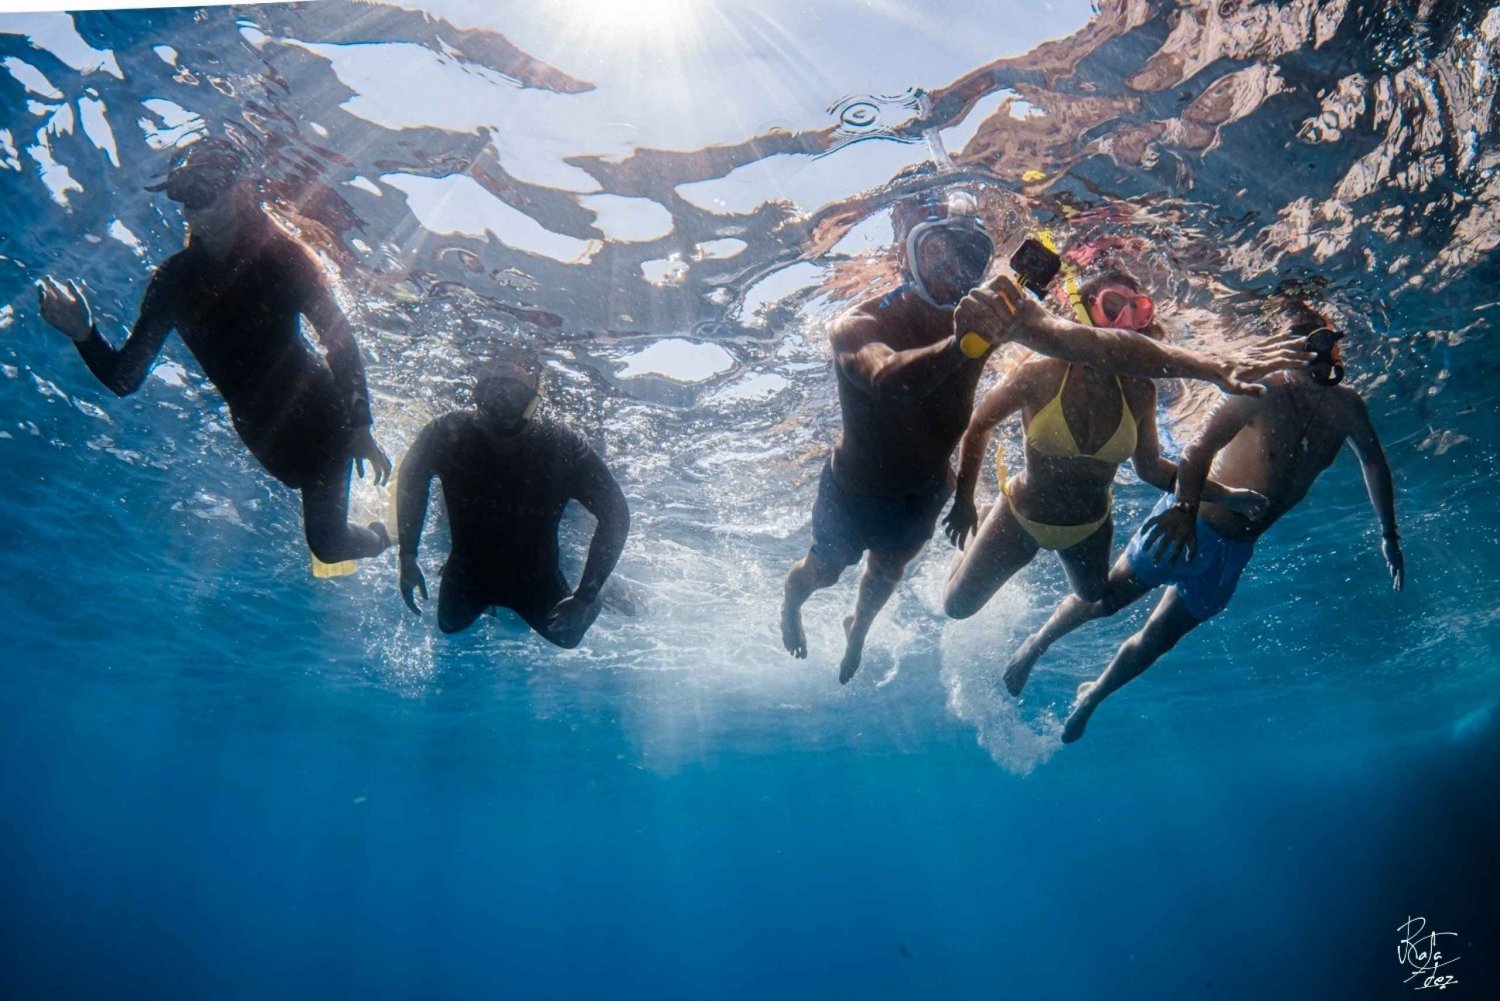 L'Estartit: Cruzeiro pelas Ilhas Medes com mergulho guiado